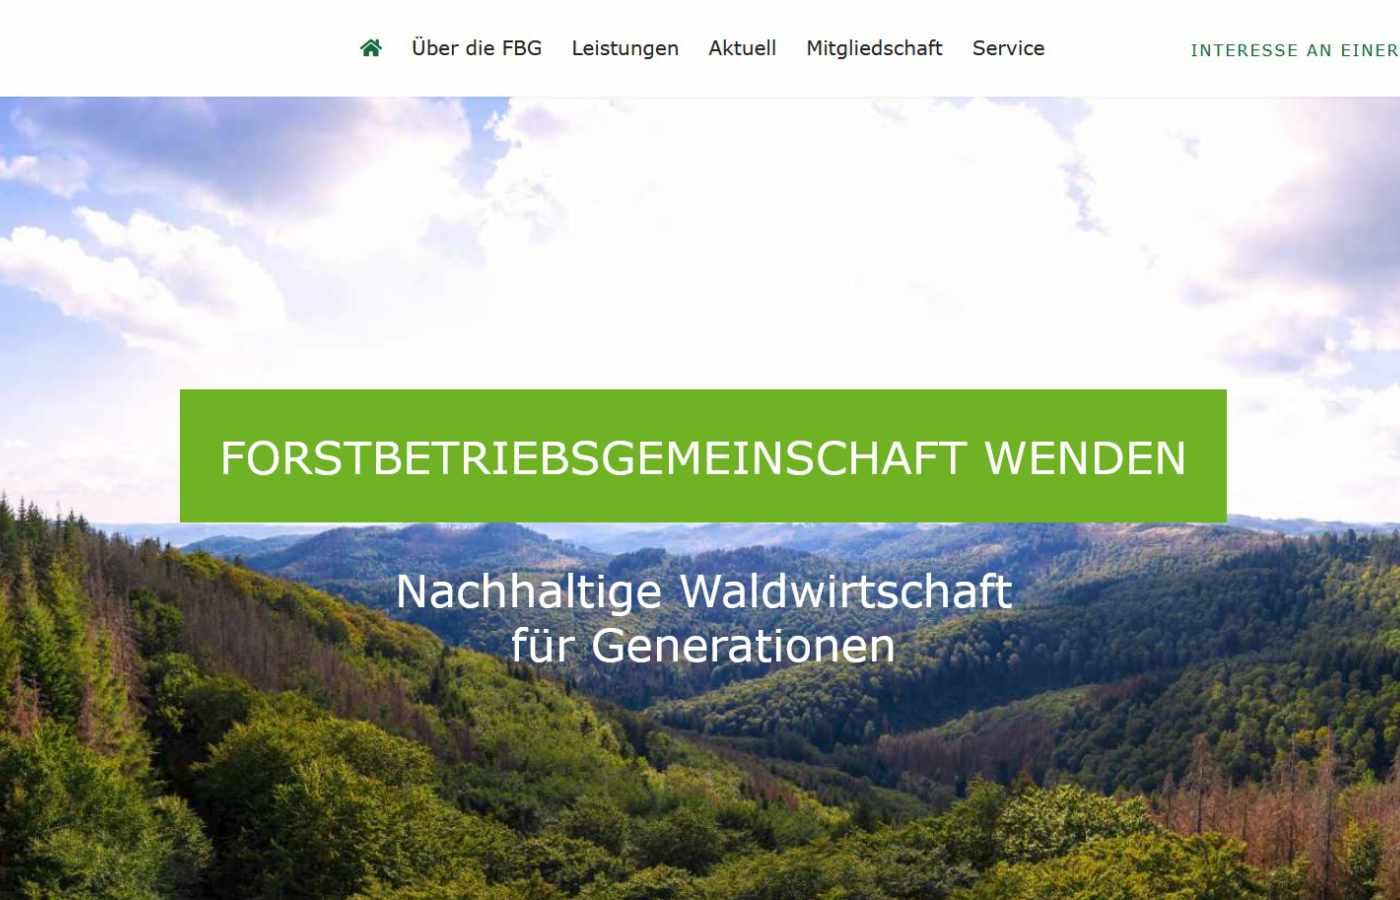 Forstbetriebsgemeinschaft Wenden